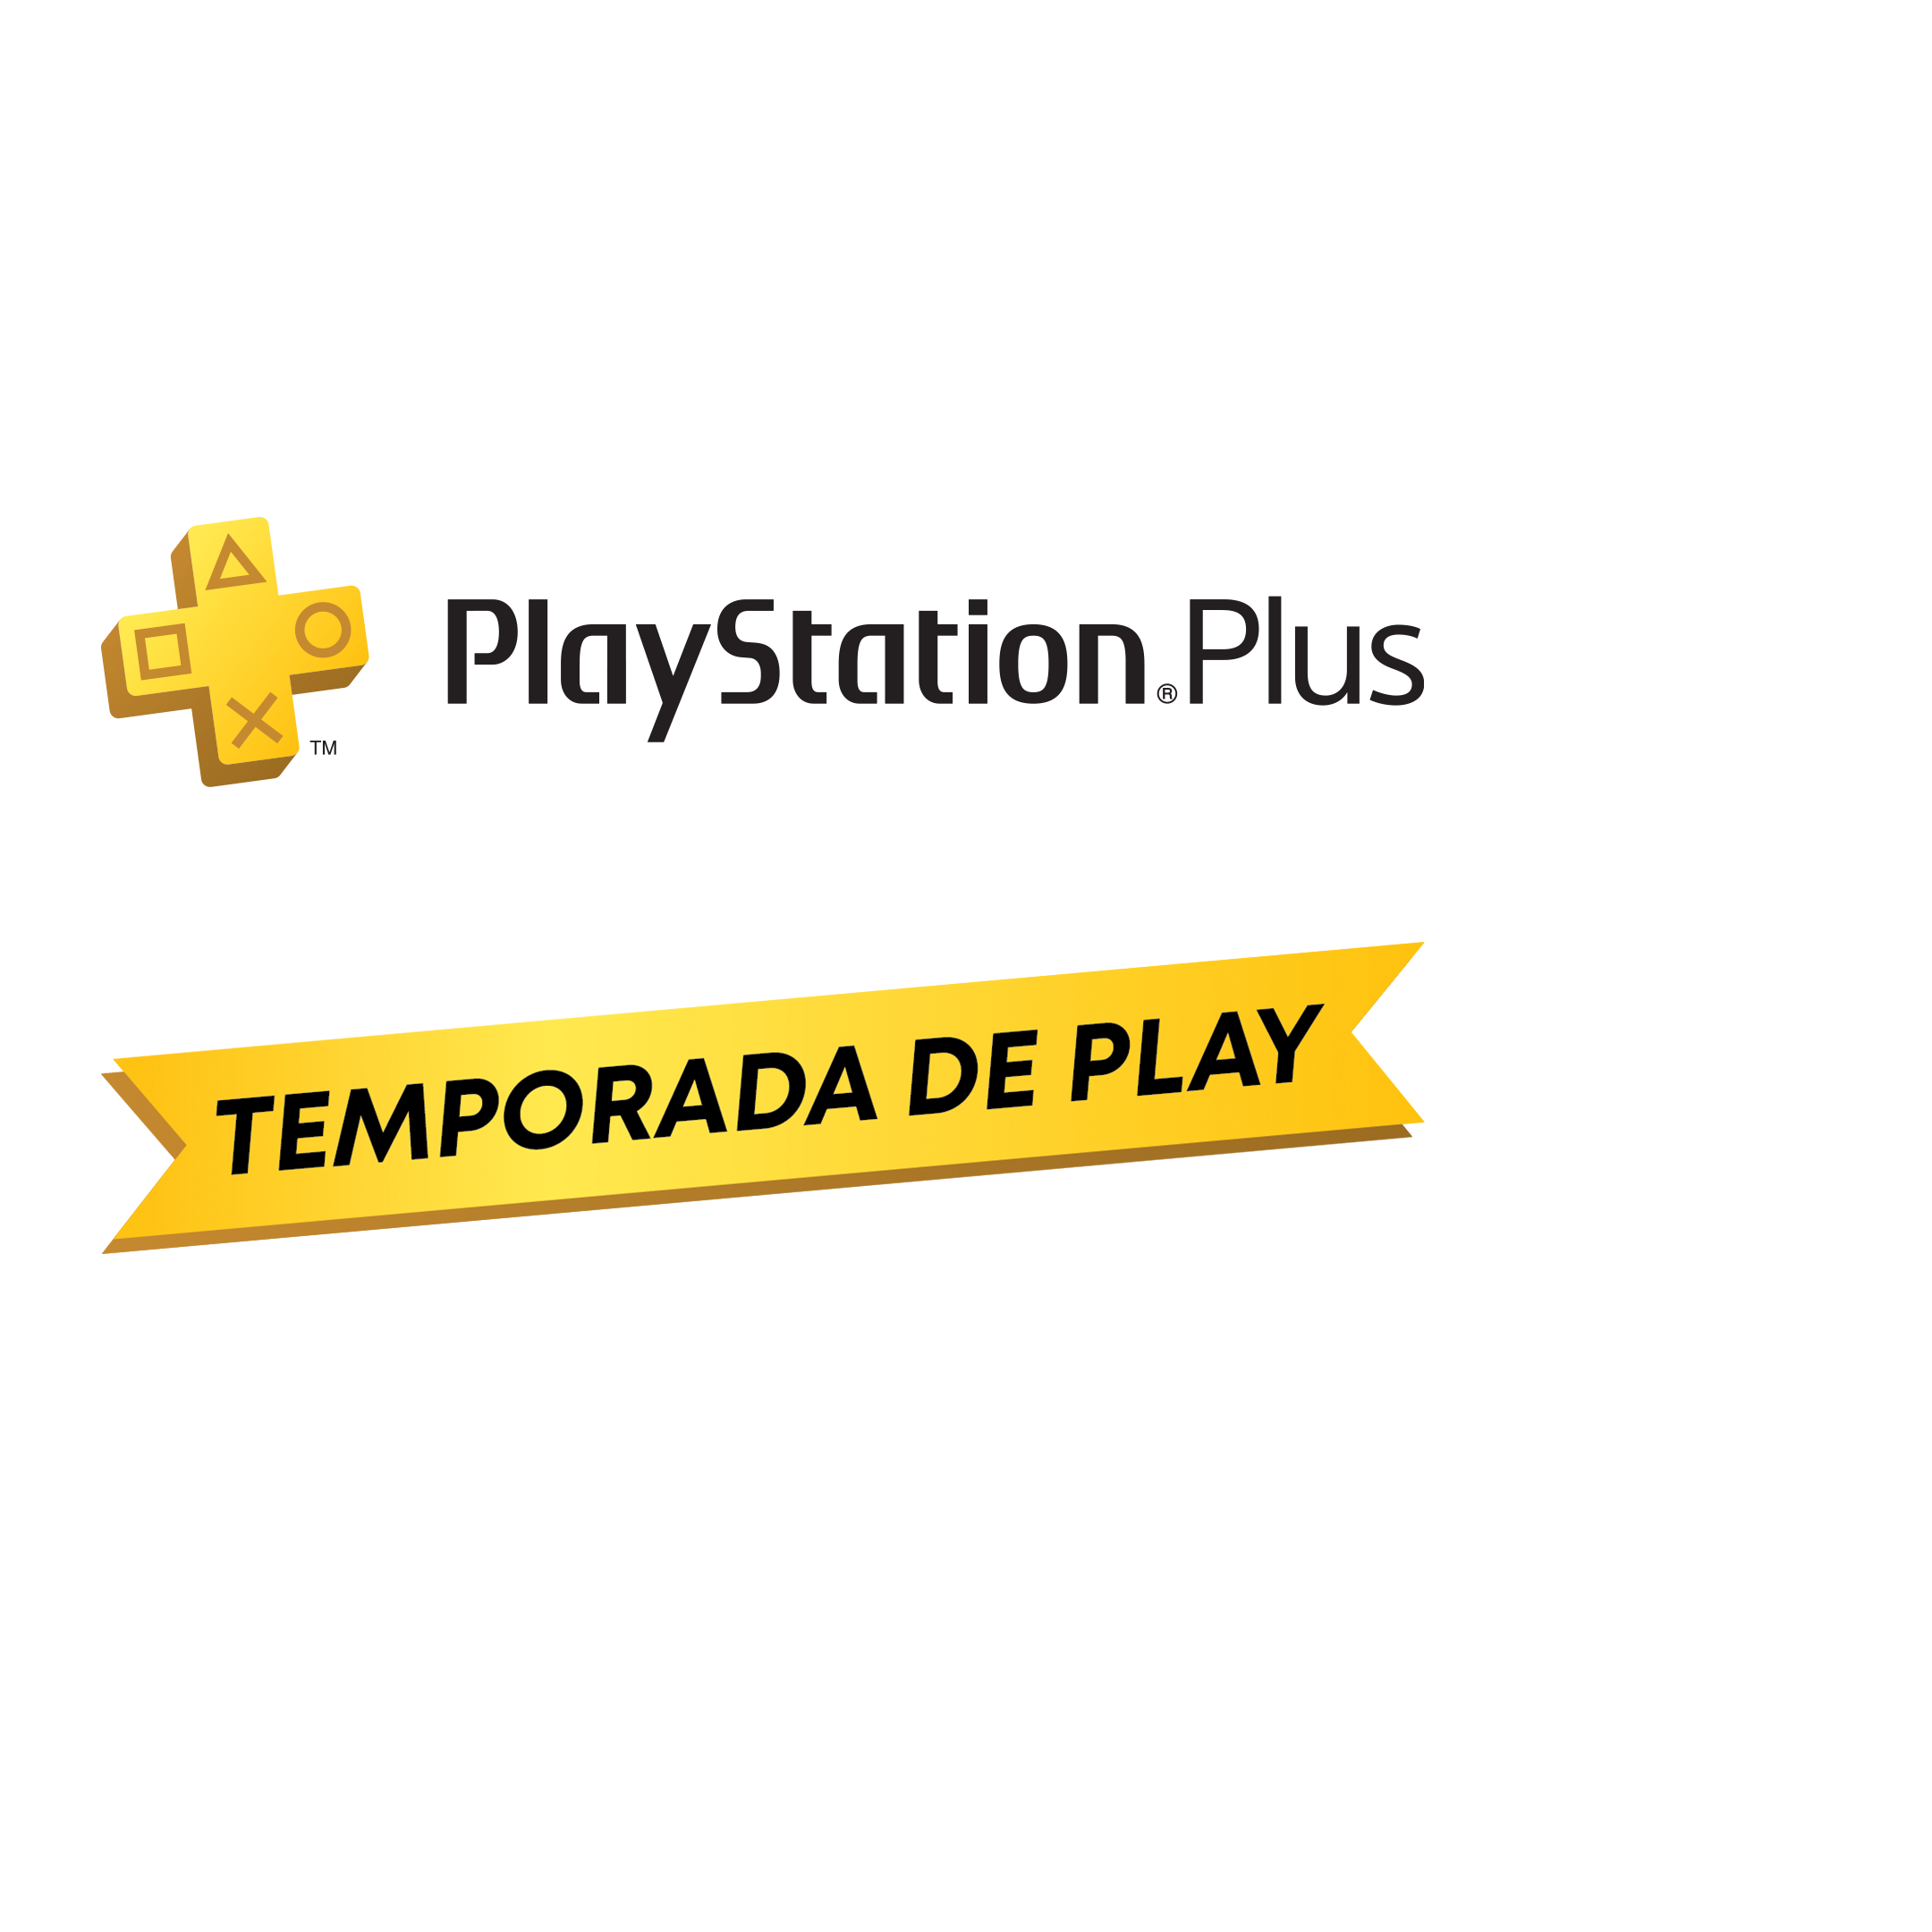 Novo PlayStation Plus terá assinatura a partir de junho; confira os jogos -  Giz Brasil